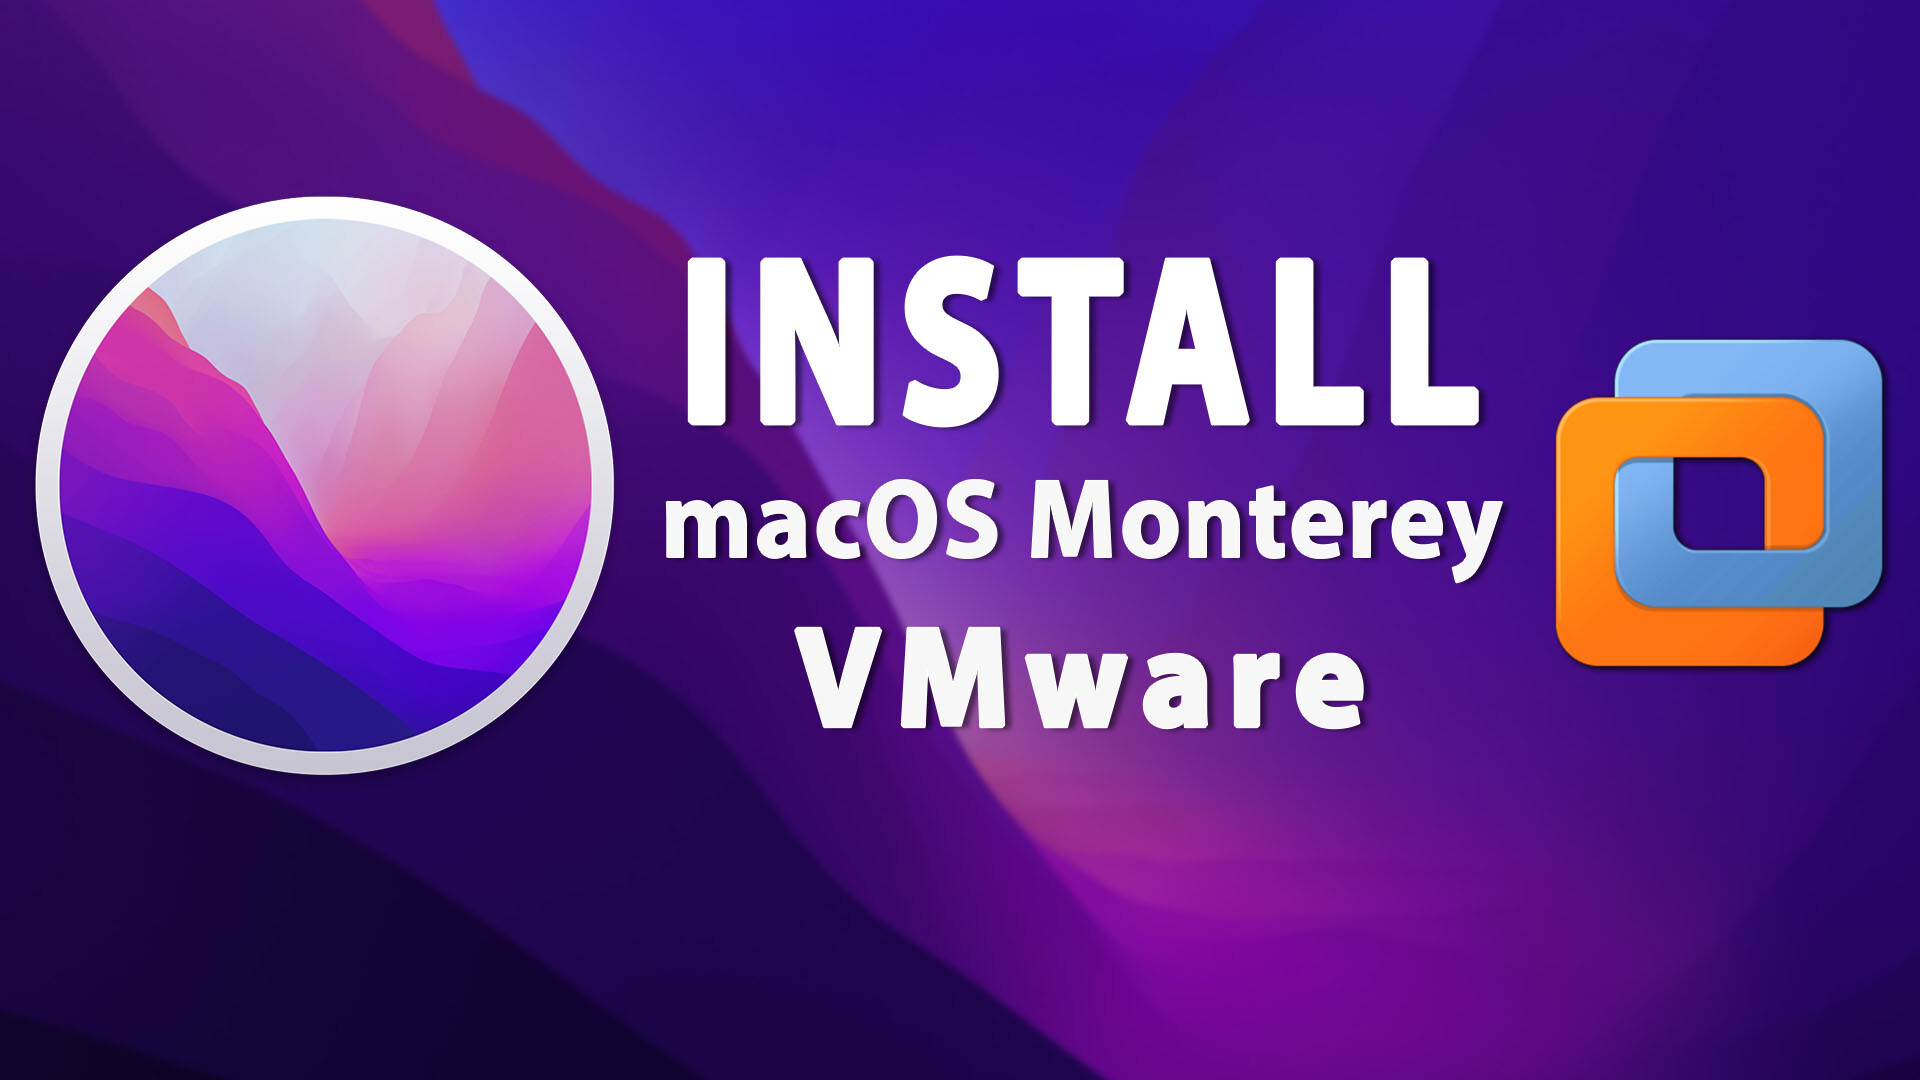 vmware macos windows